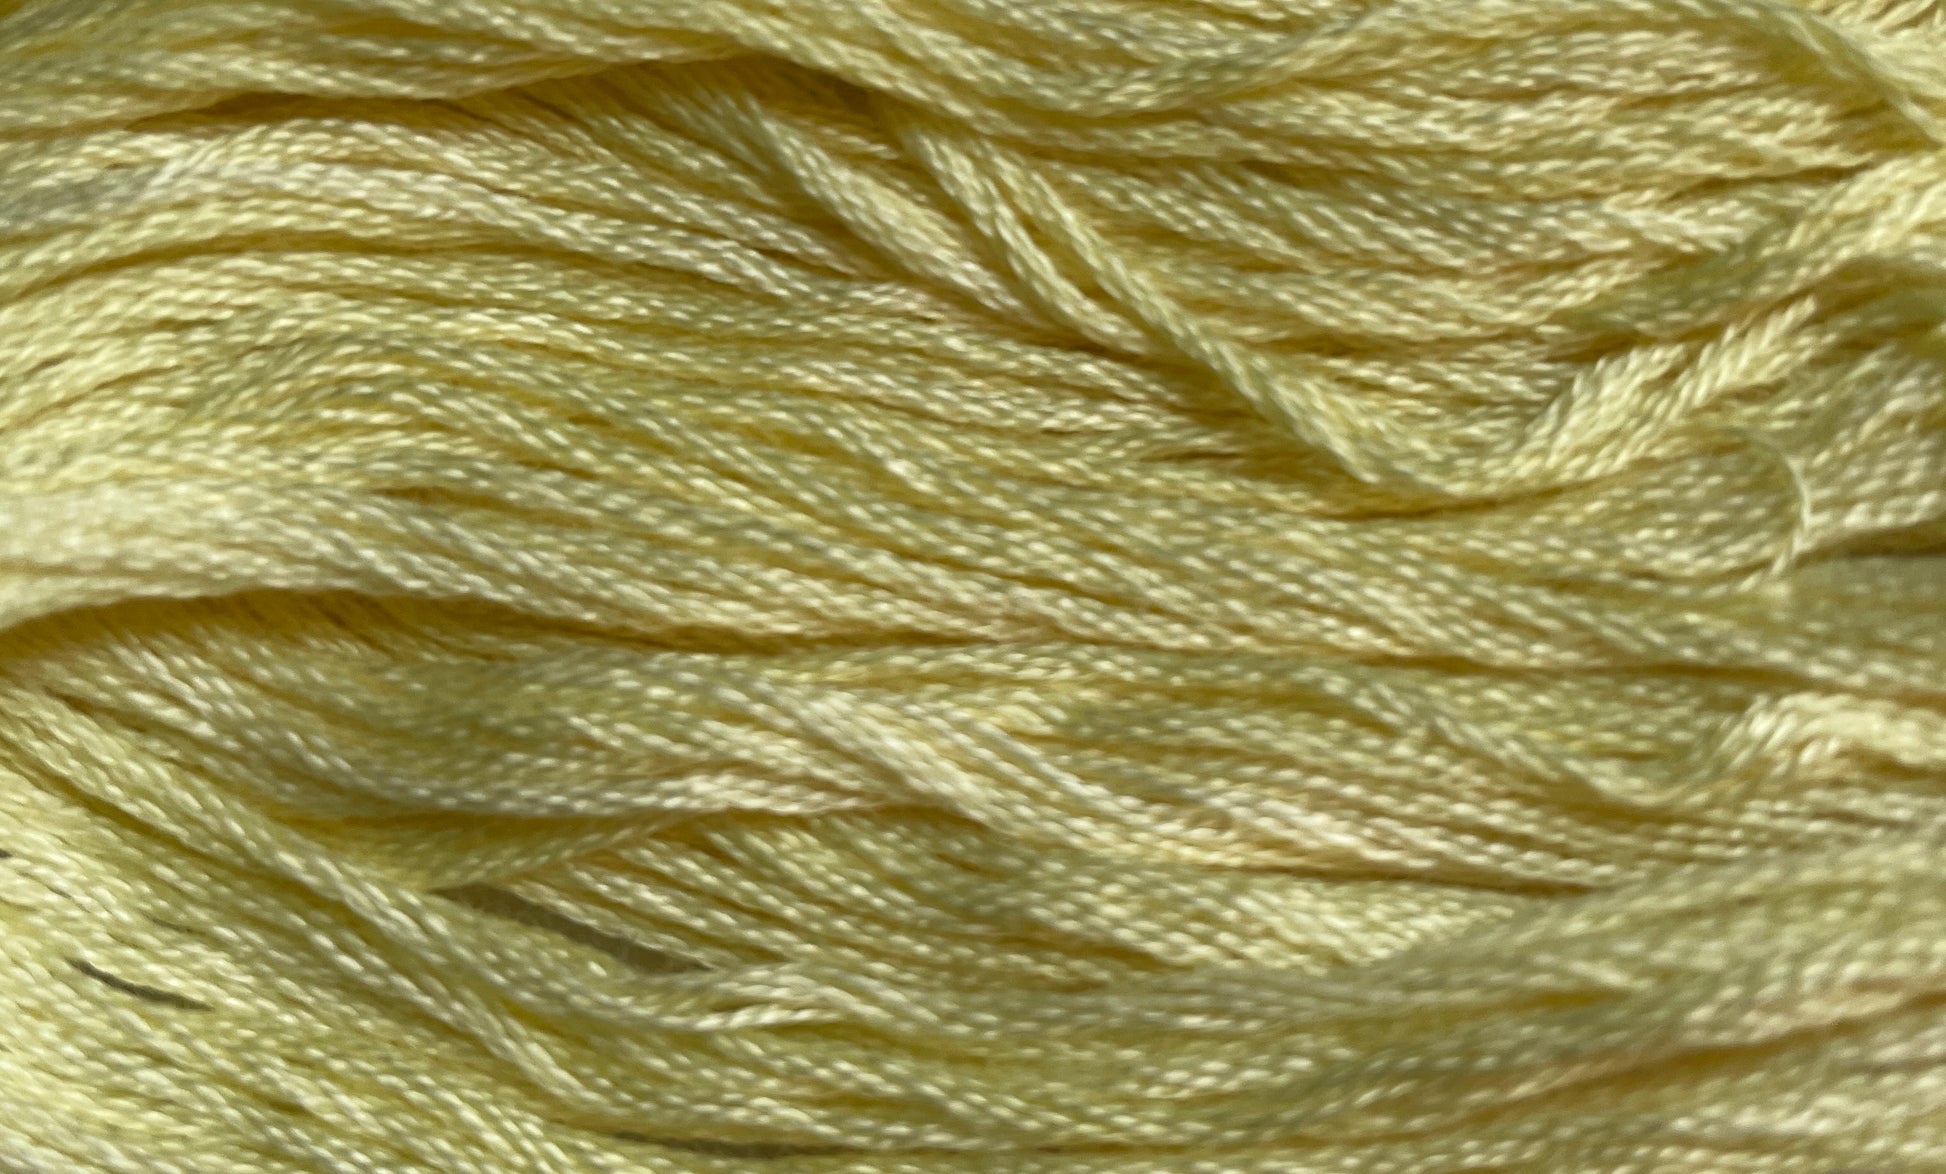 Daisy - Gentle Arts Cotton Thread - 5 yard Skein - Cross Stitch Floss, Thread & Floss, Thread & Floss, The Crafty Grimalkin - A Cross Stitch Store